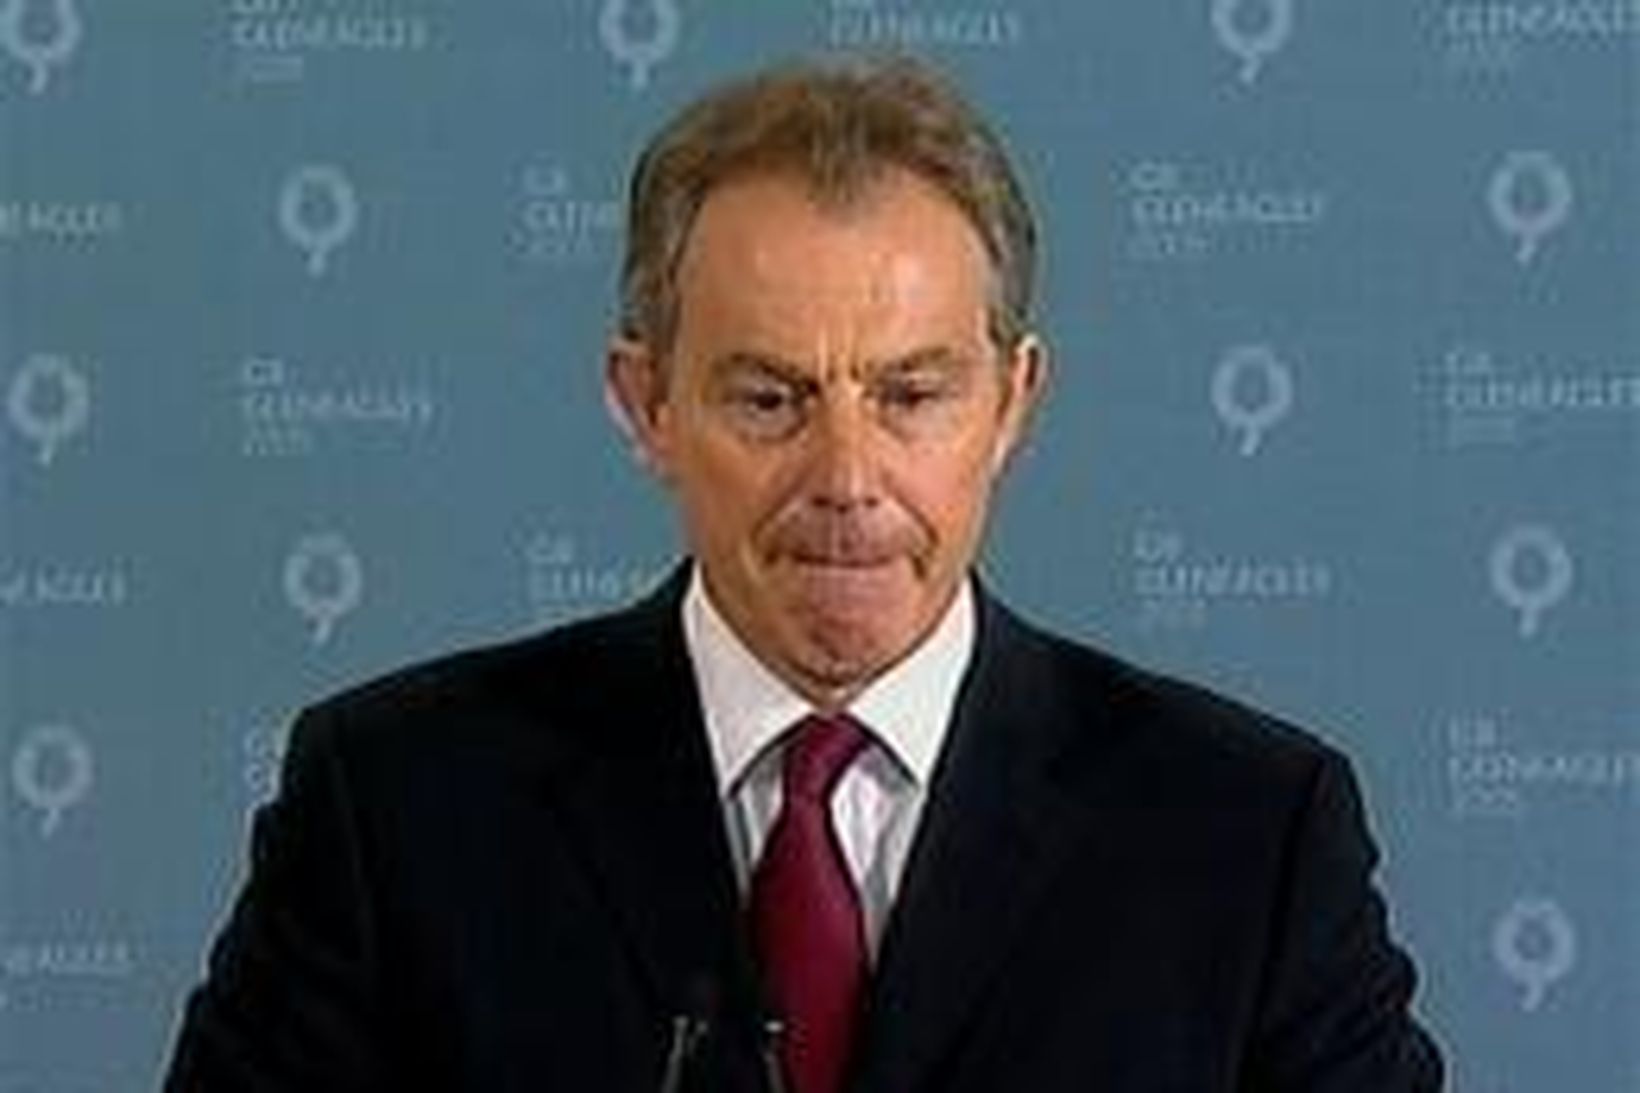 Blair þegar hann flutti ávarp sitt í Gleneagles í dag.